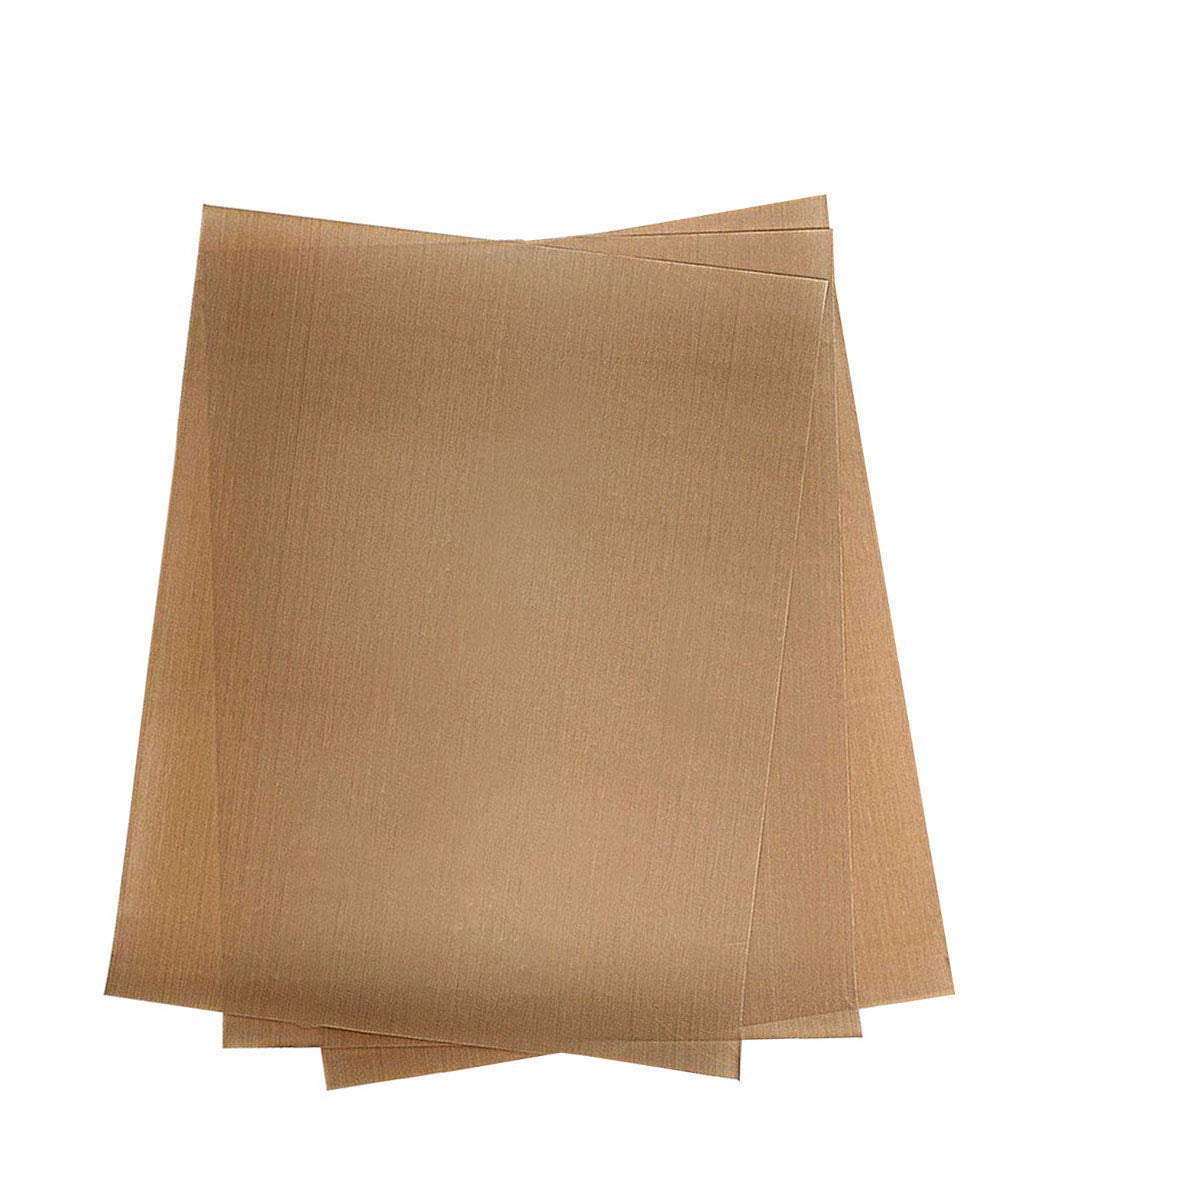 Details about   Baking Mat Teflon Sheet Oil Paper Heat Resistant Pad Non Stick Microwave Warm 